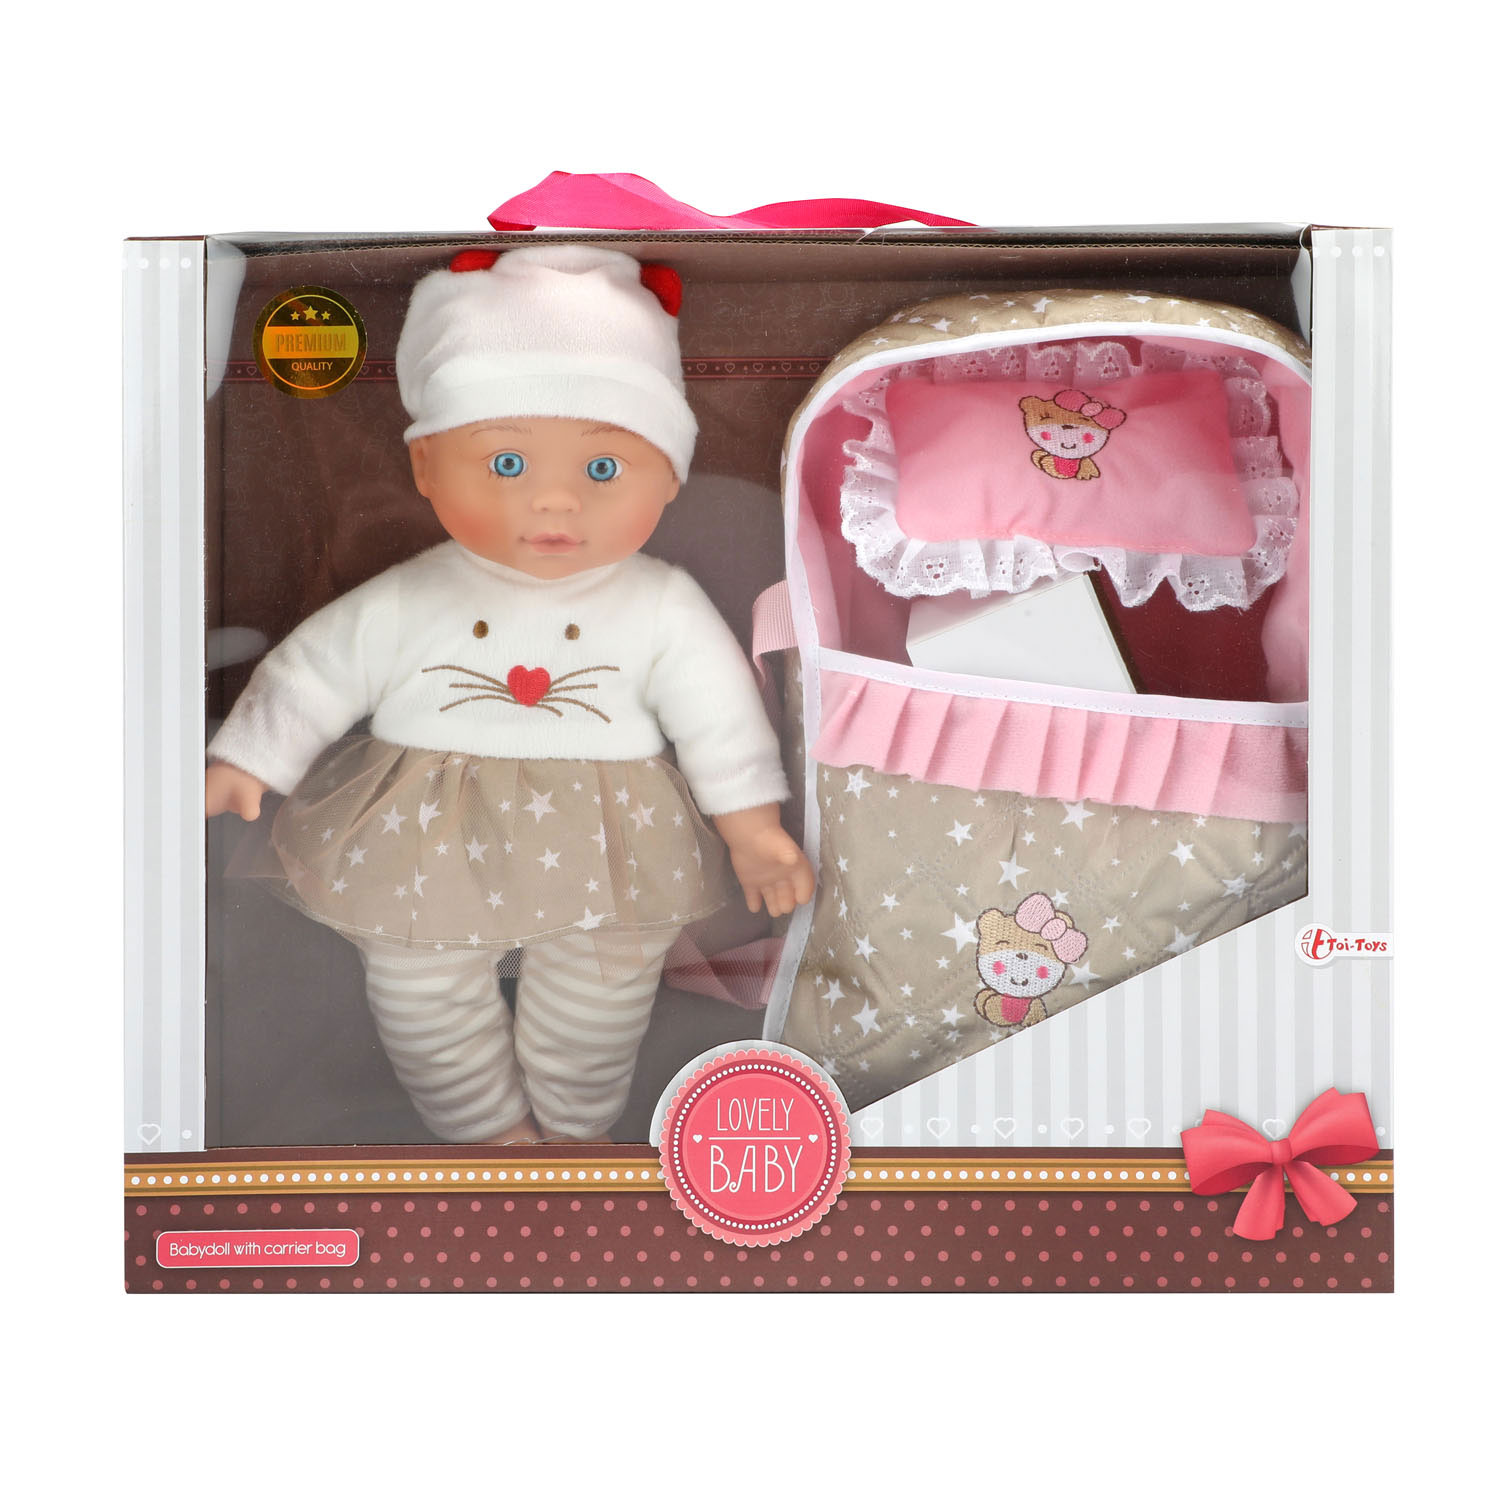 Diplomaat Mooi Bloedbad Lovely Baby Babypop met Reiswieg, 32cm | Thimble Toys